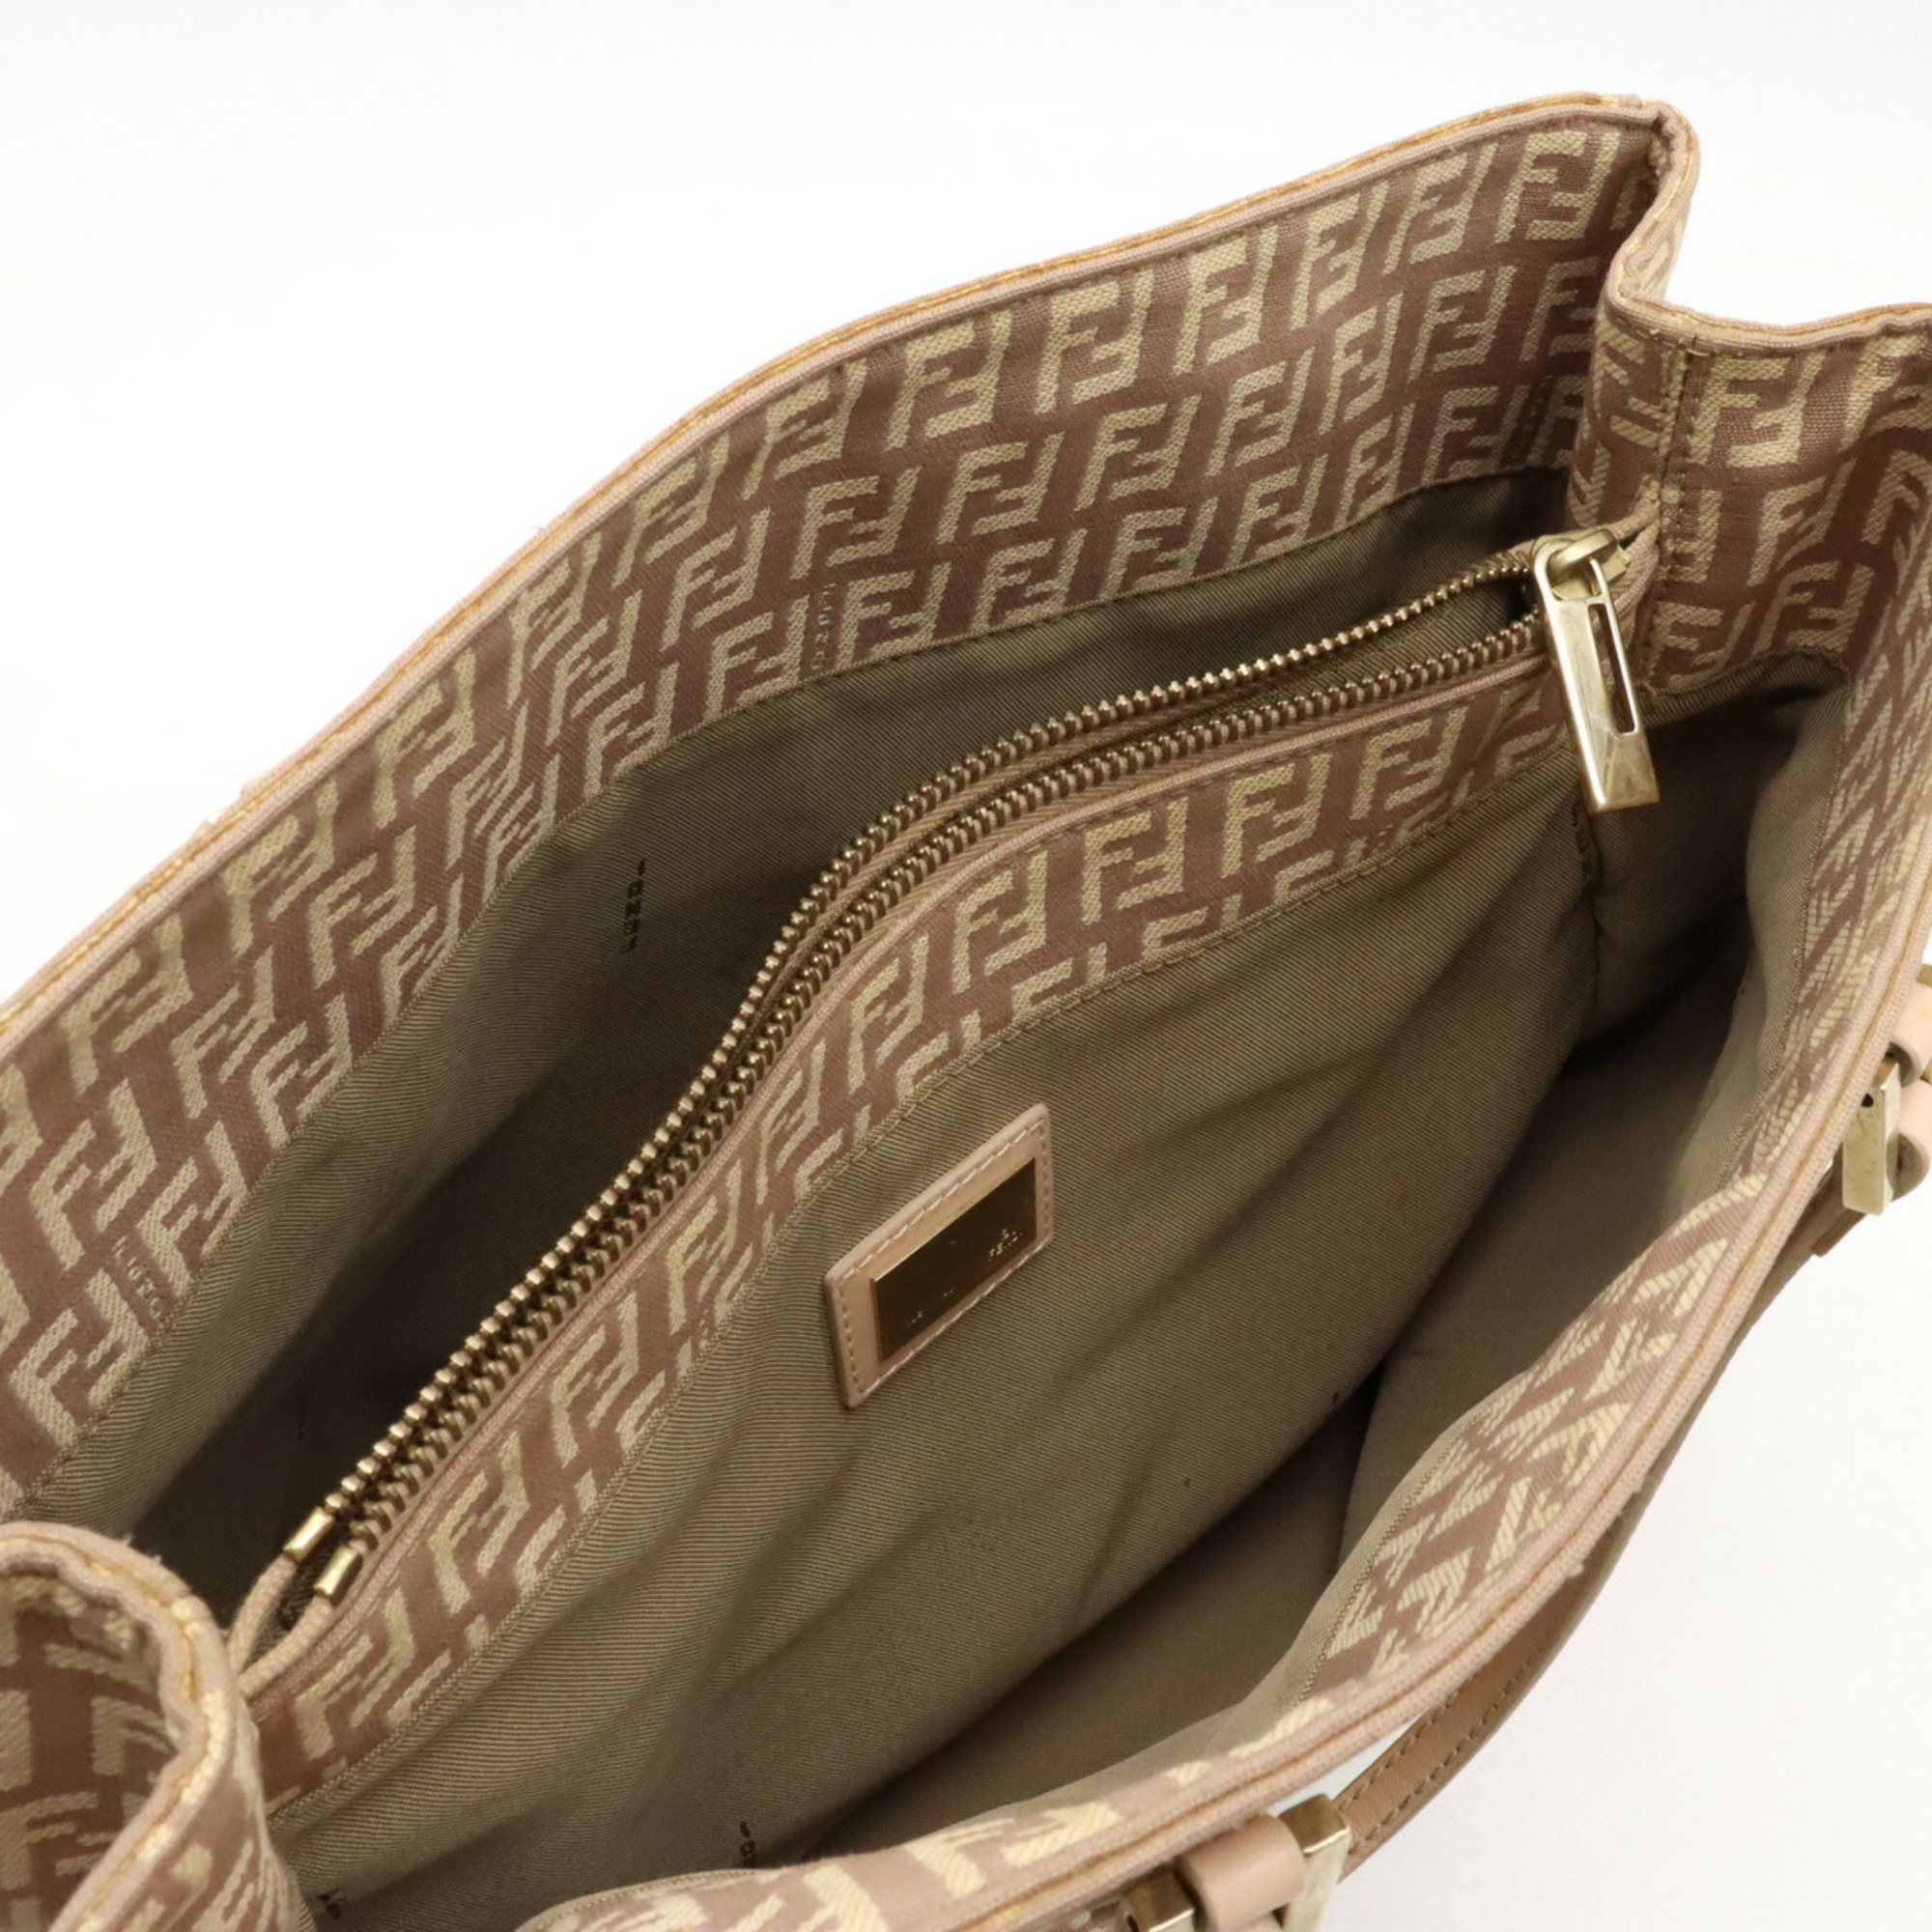 FENDI Zucchino Zucca pattern tote bag handbag canvas leather pink beige 8BH133